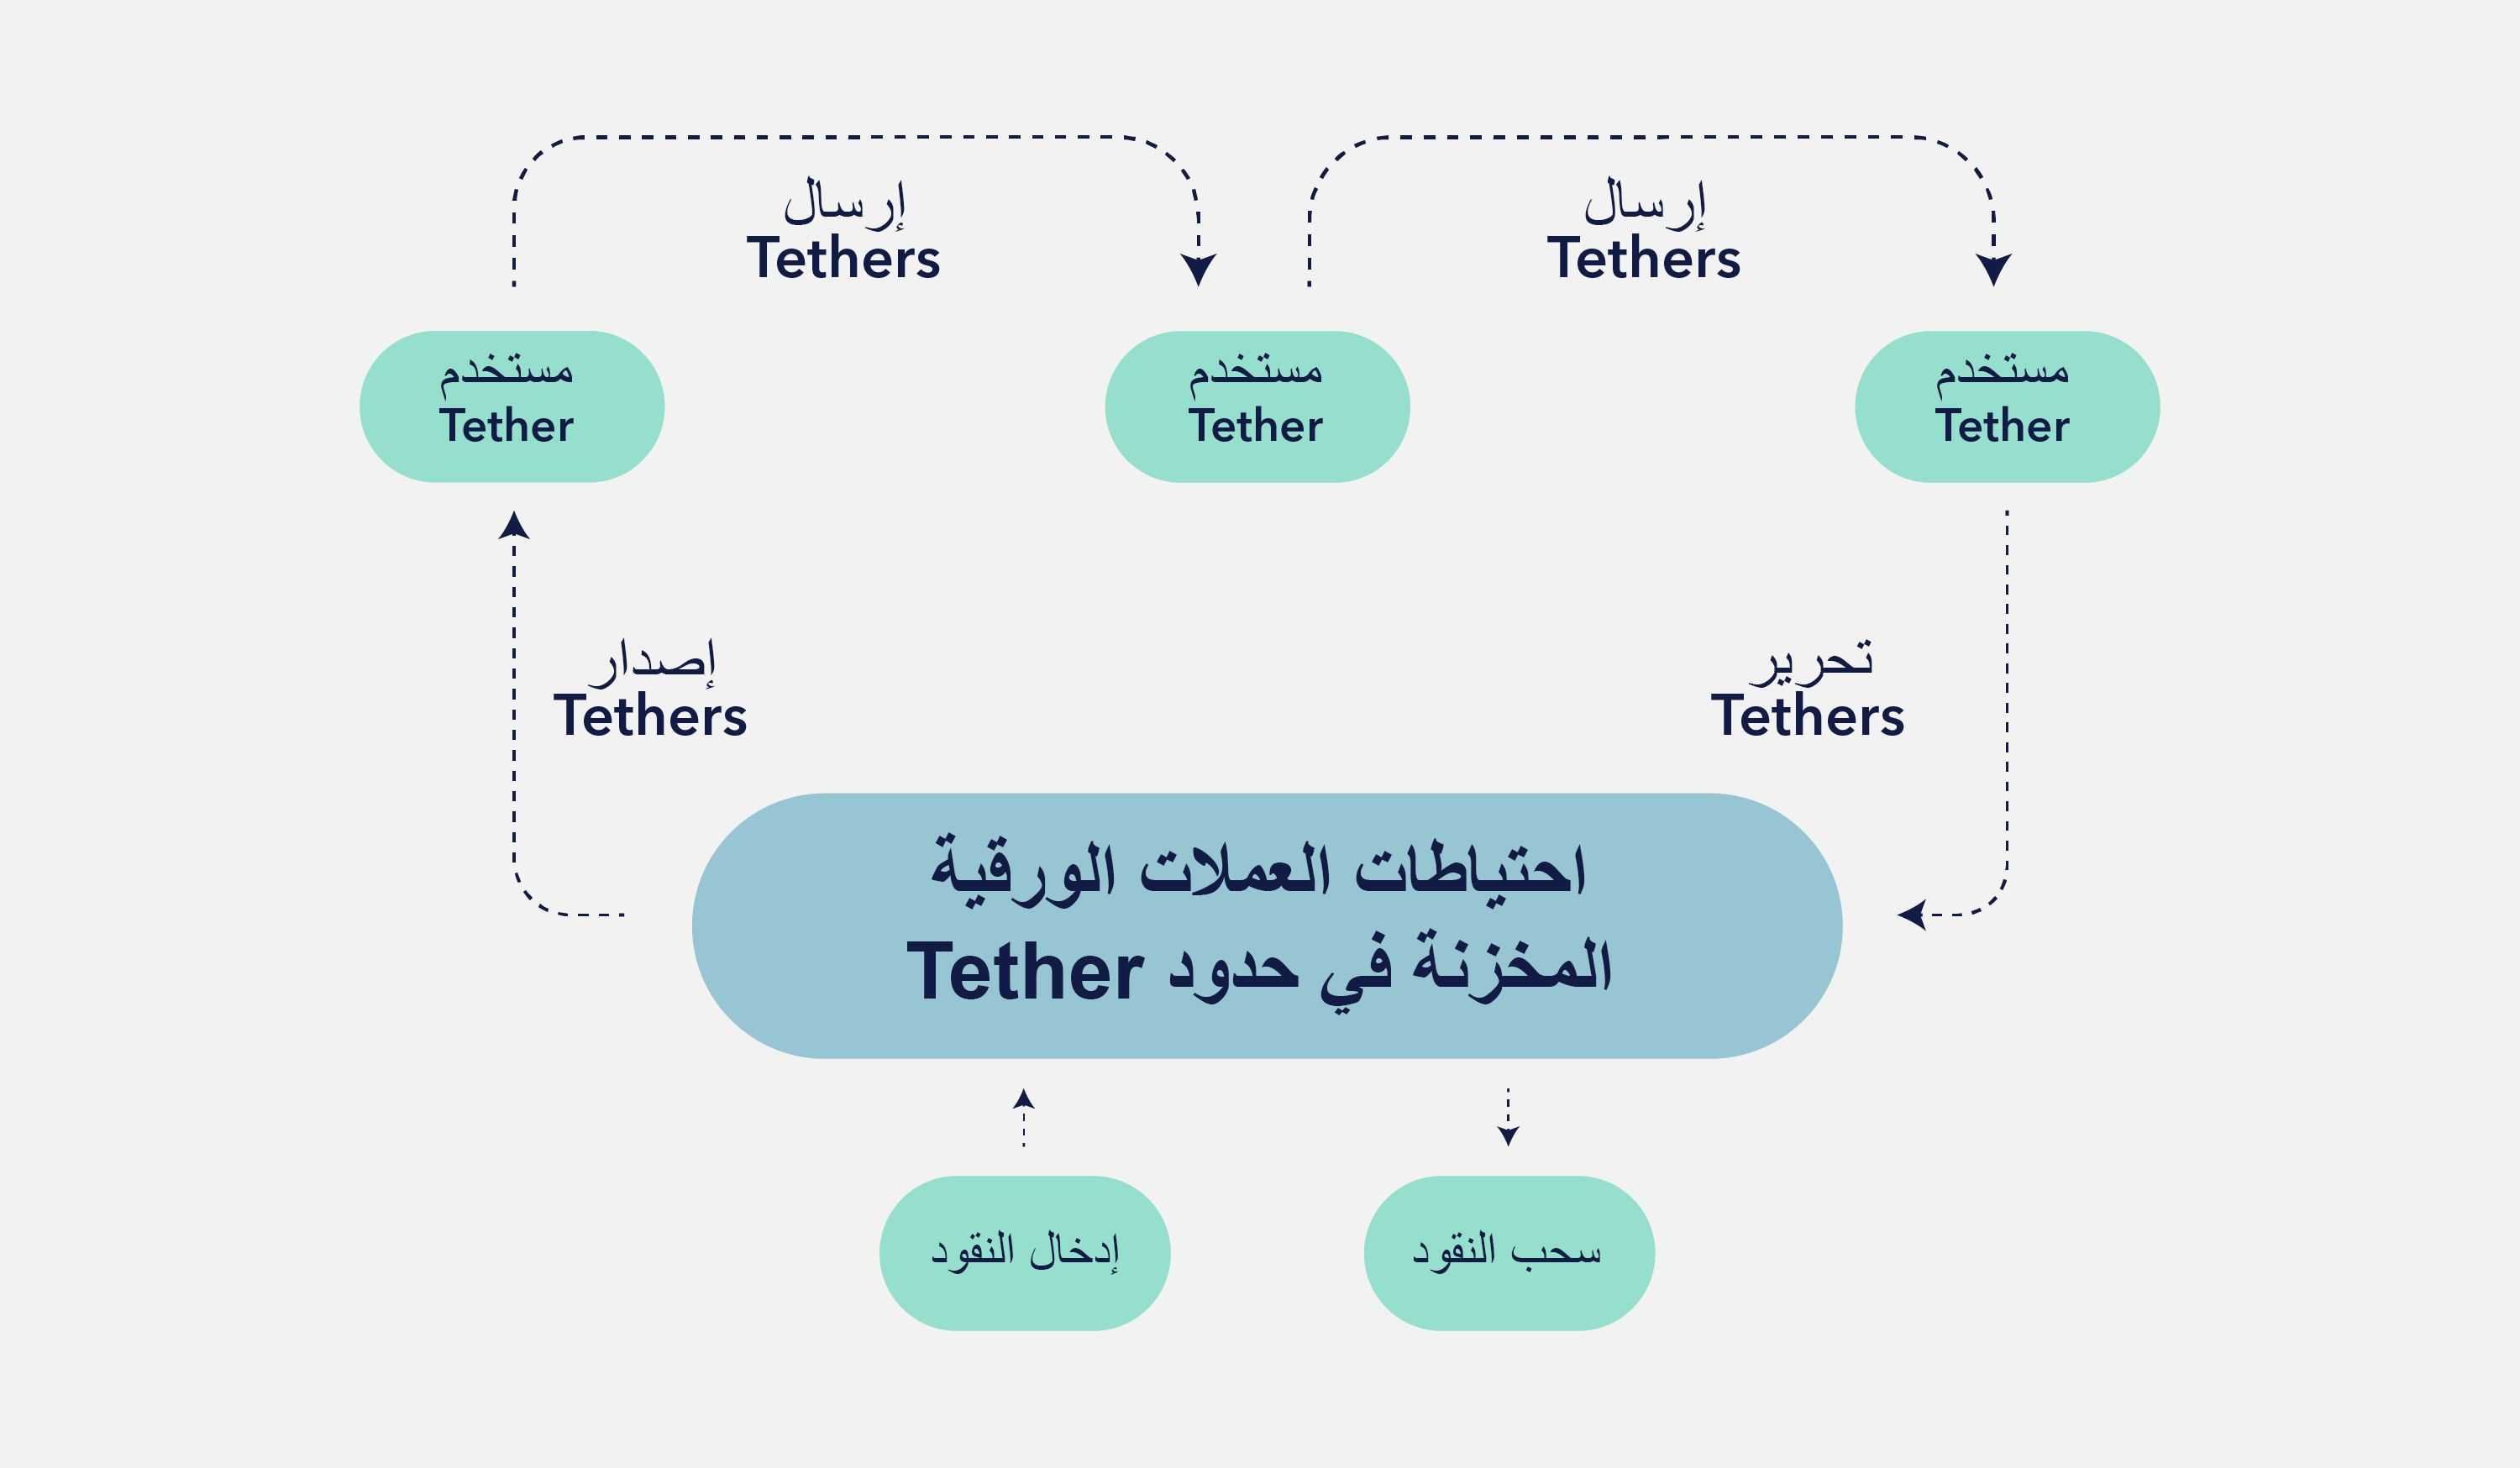 رسم توضيحي يوضح عمليات إصدار وتحرير الـ Tether